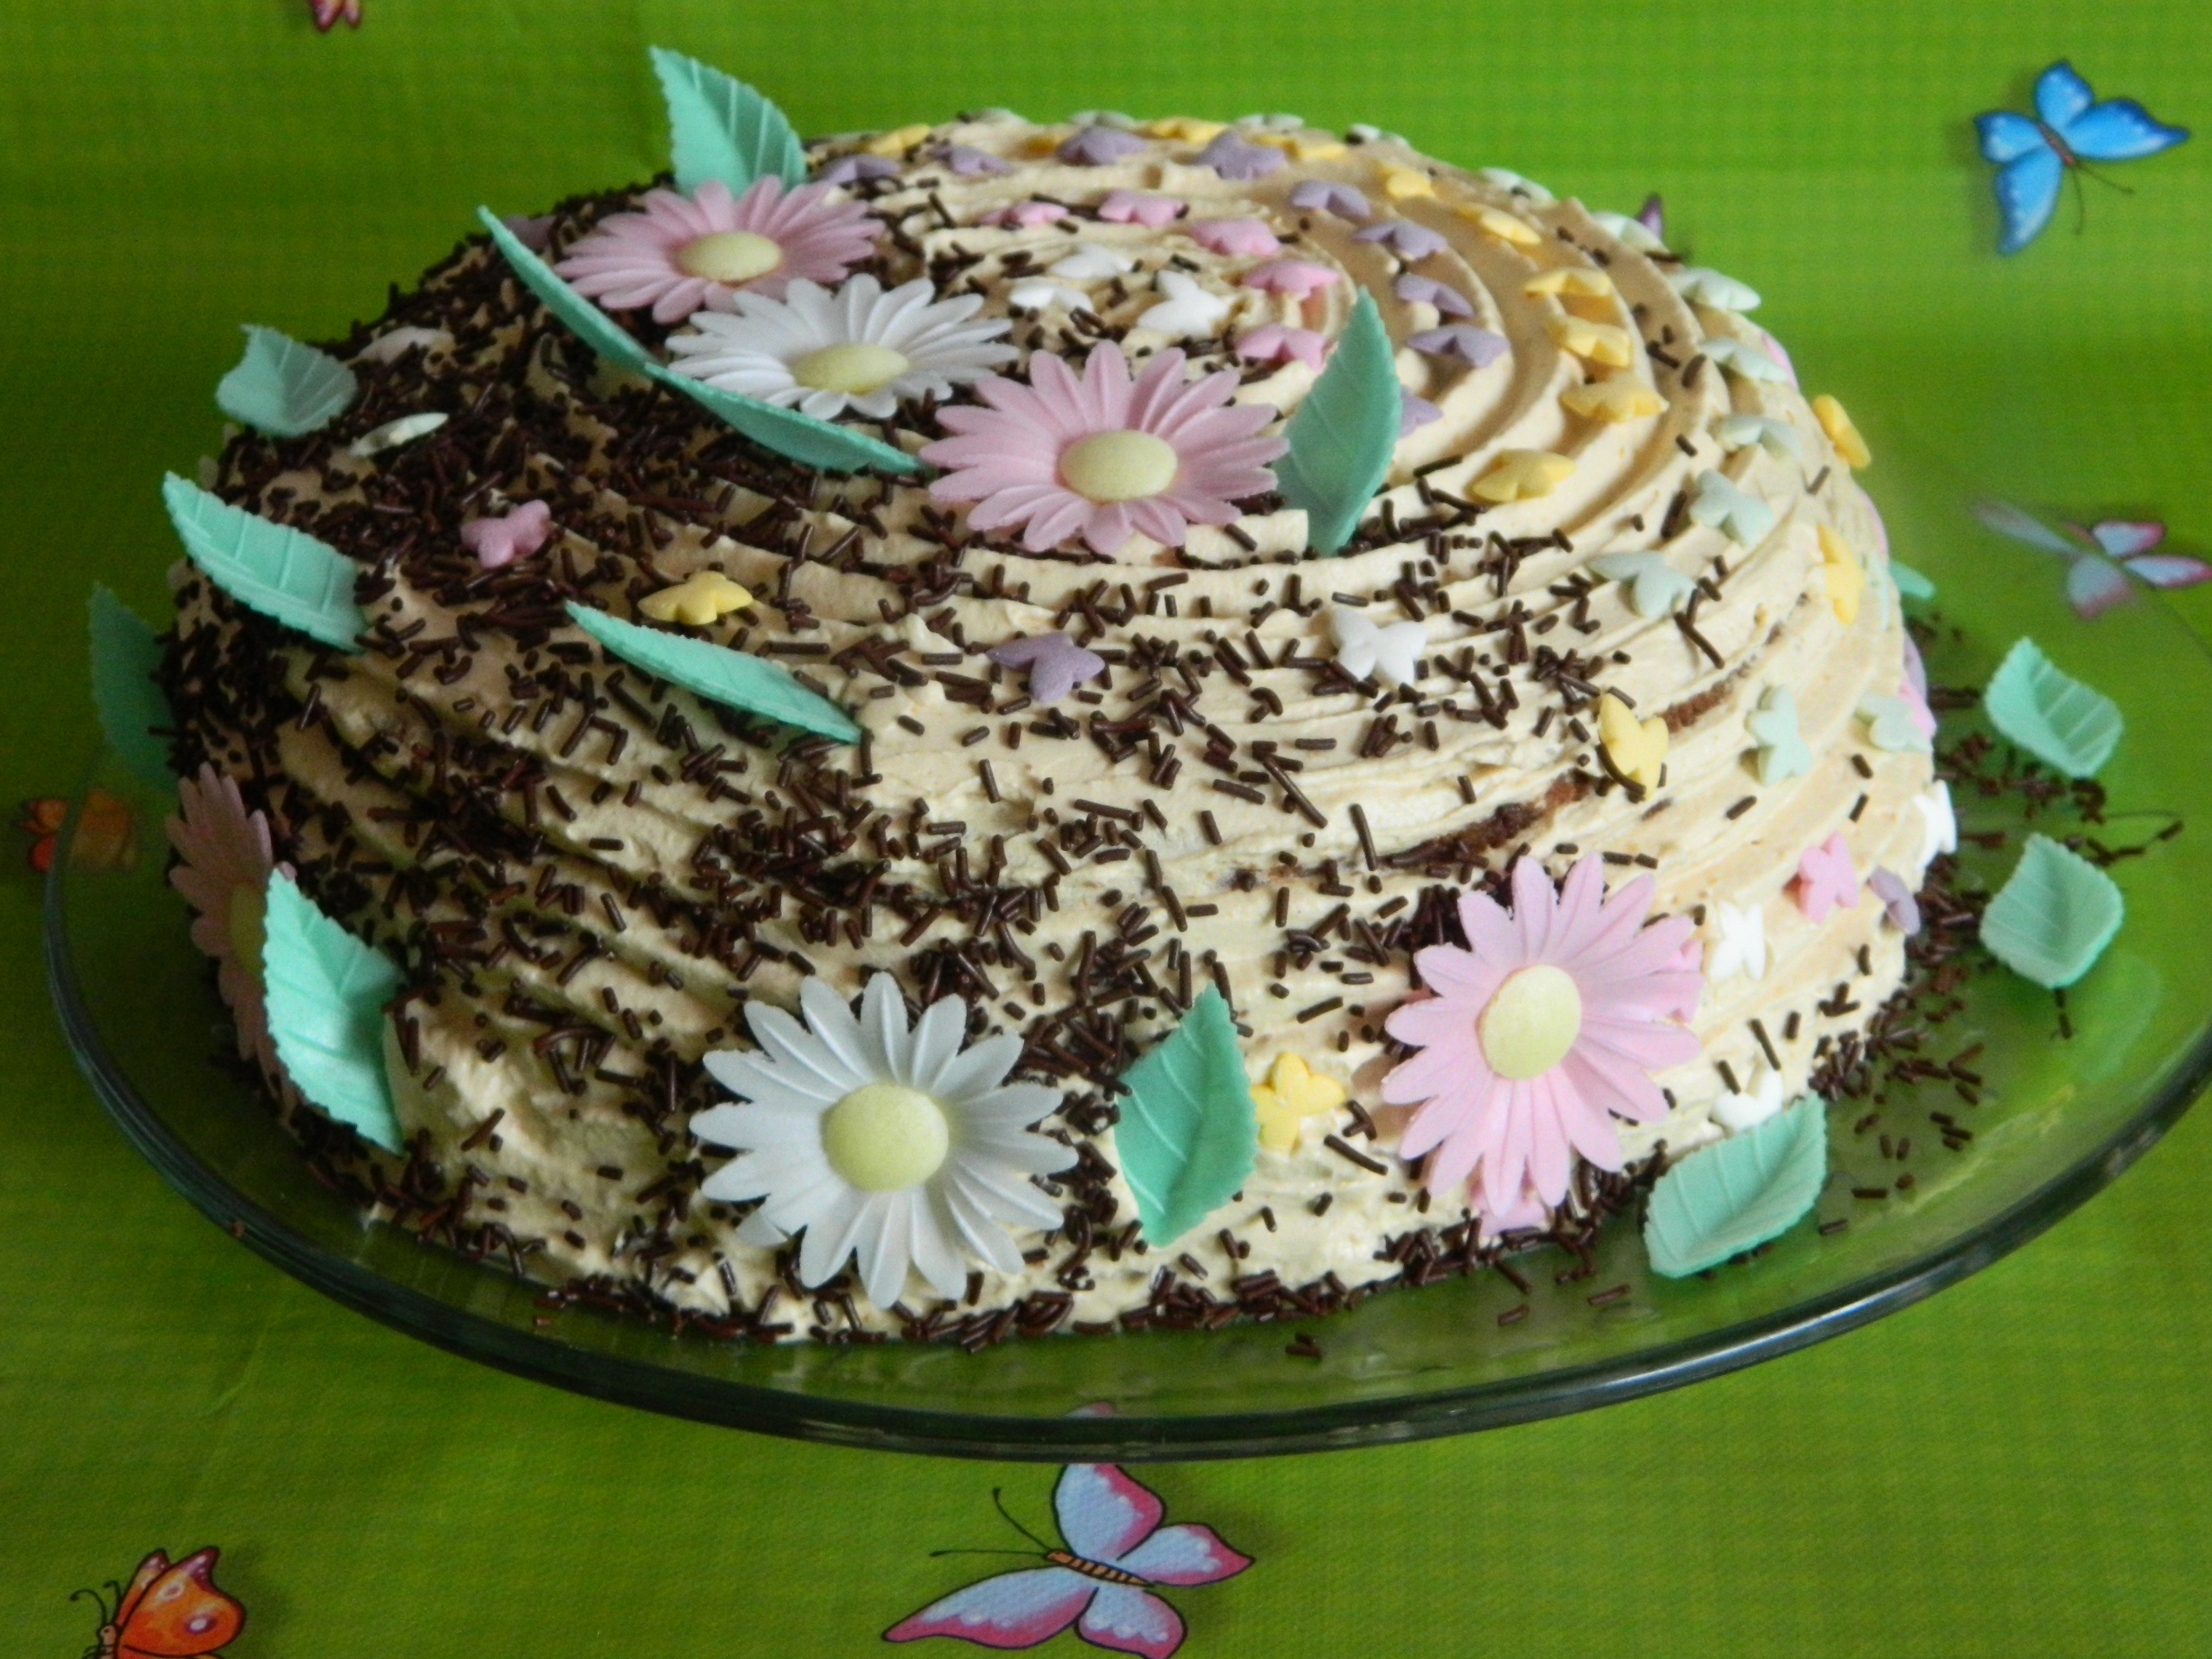 Desert tort cu crema caramel si ananas (de post) - Reteta nr 500